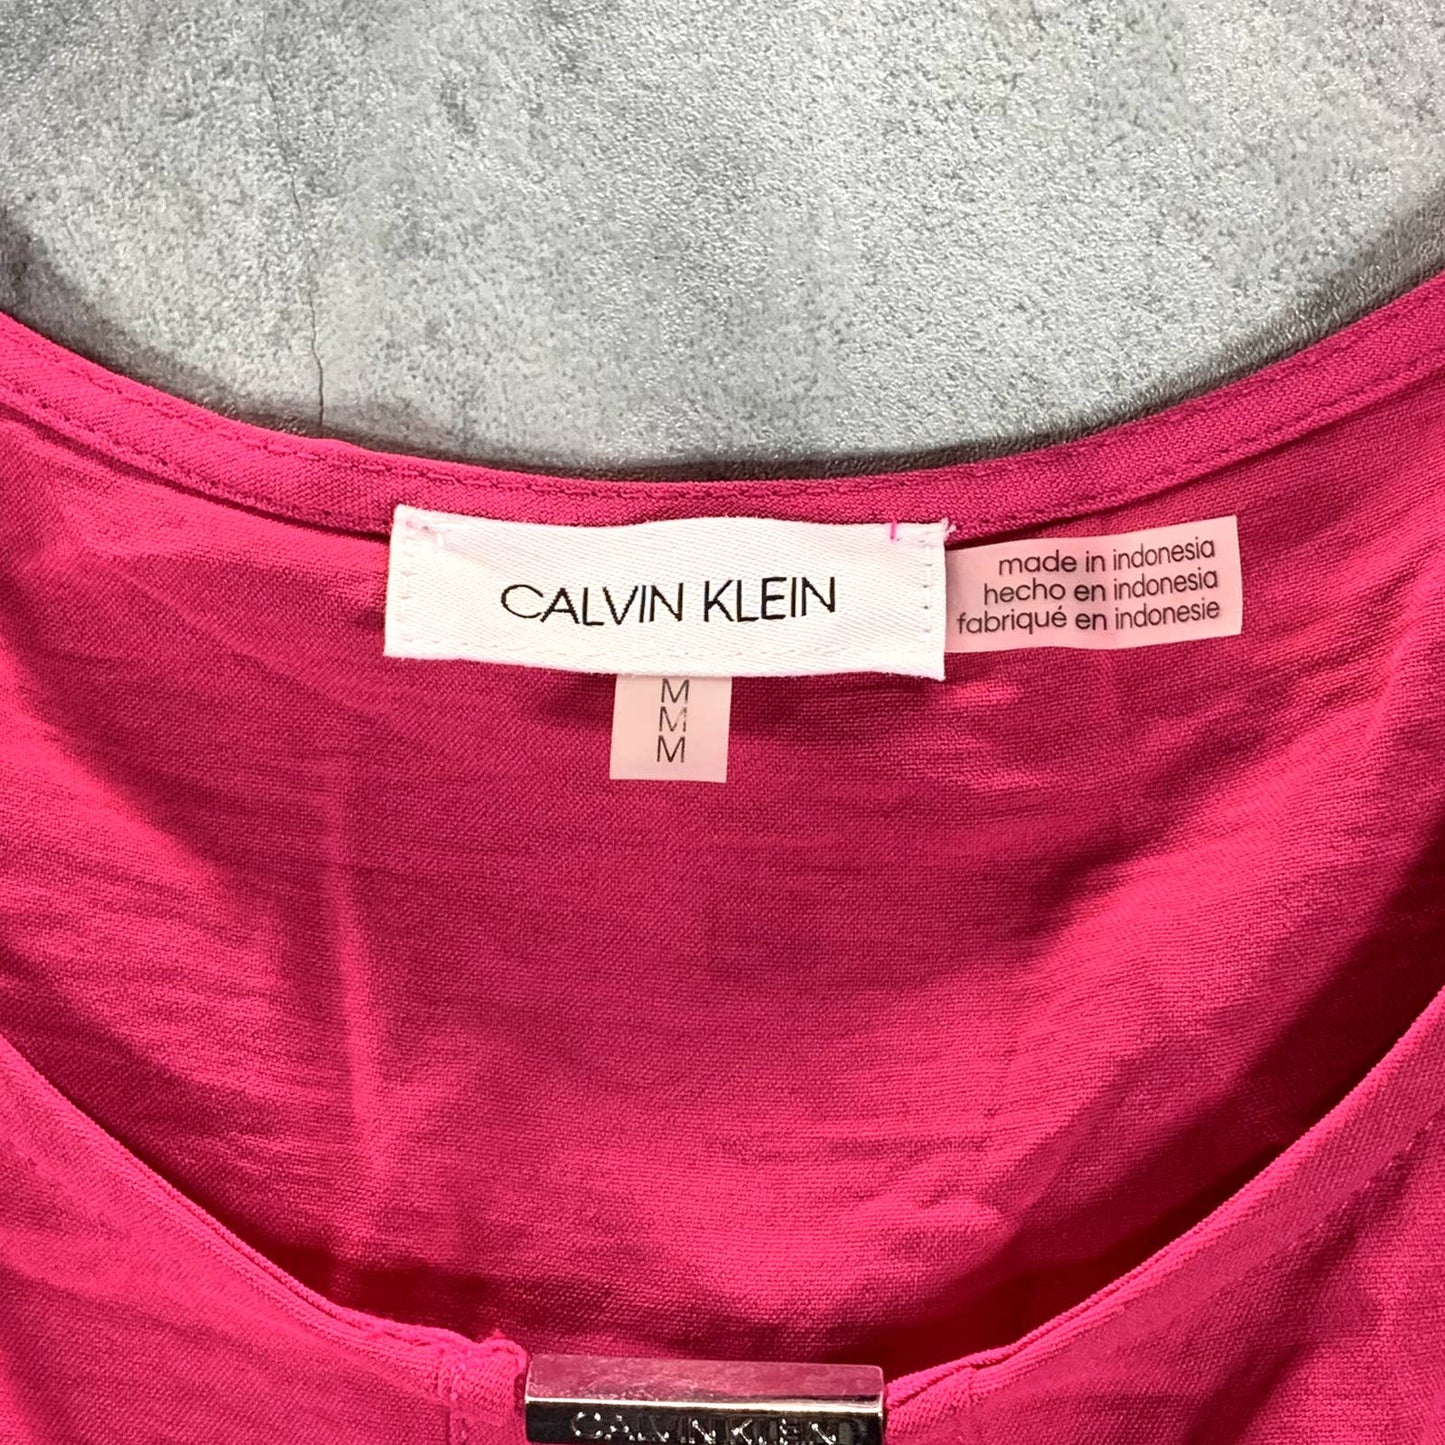 CALVIN KLEIN Women's Bright Pink Crewneck Keyhole Neck Dolman Sleeve Top SZ M